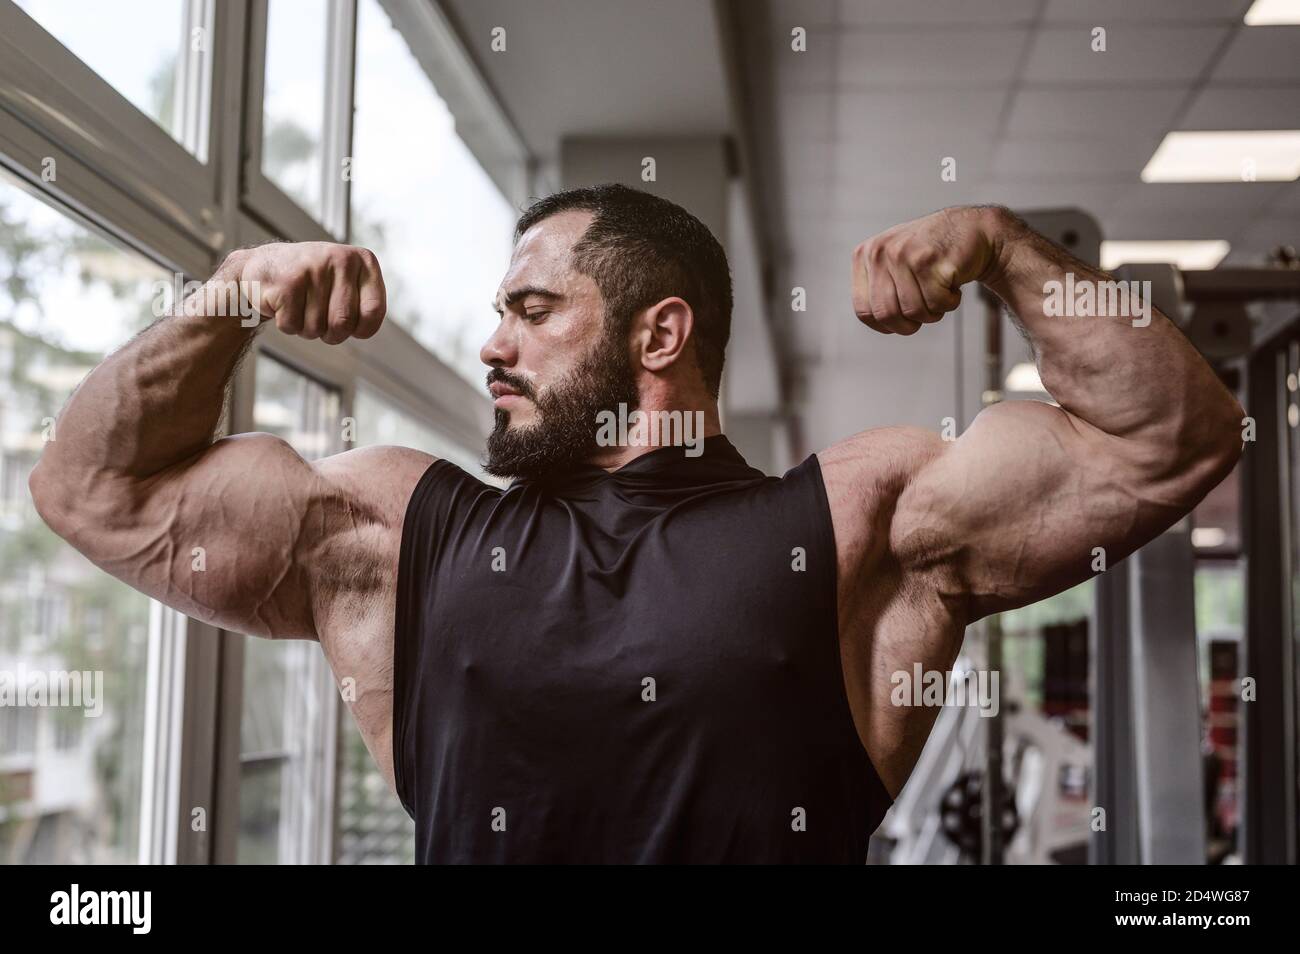 Starker junger Athlet Mann mit Bart trägt schwarzen Tank Top Zeigt große doppelte Bizeps Muskel in Sporthalle mit Fenster Stockfoto